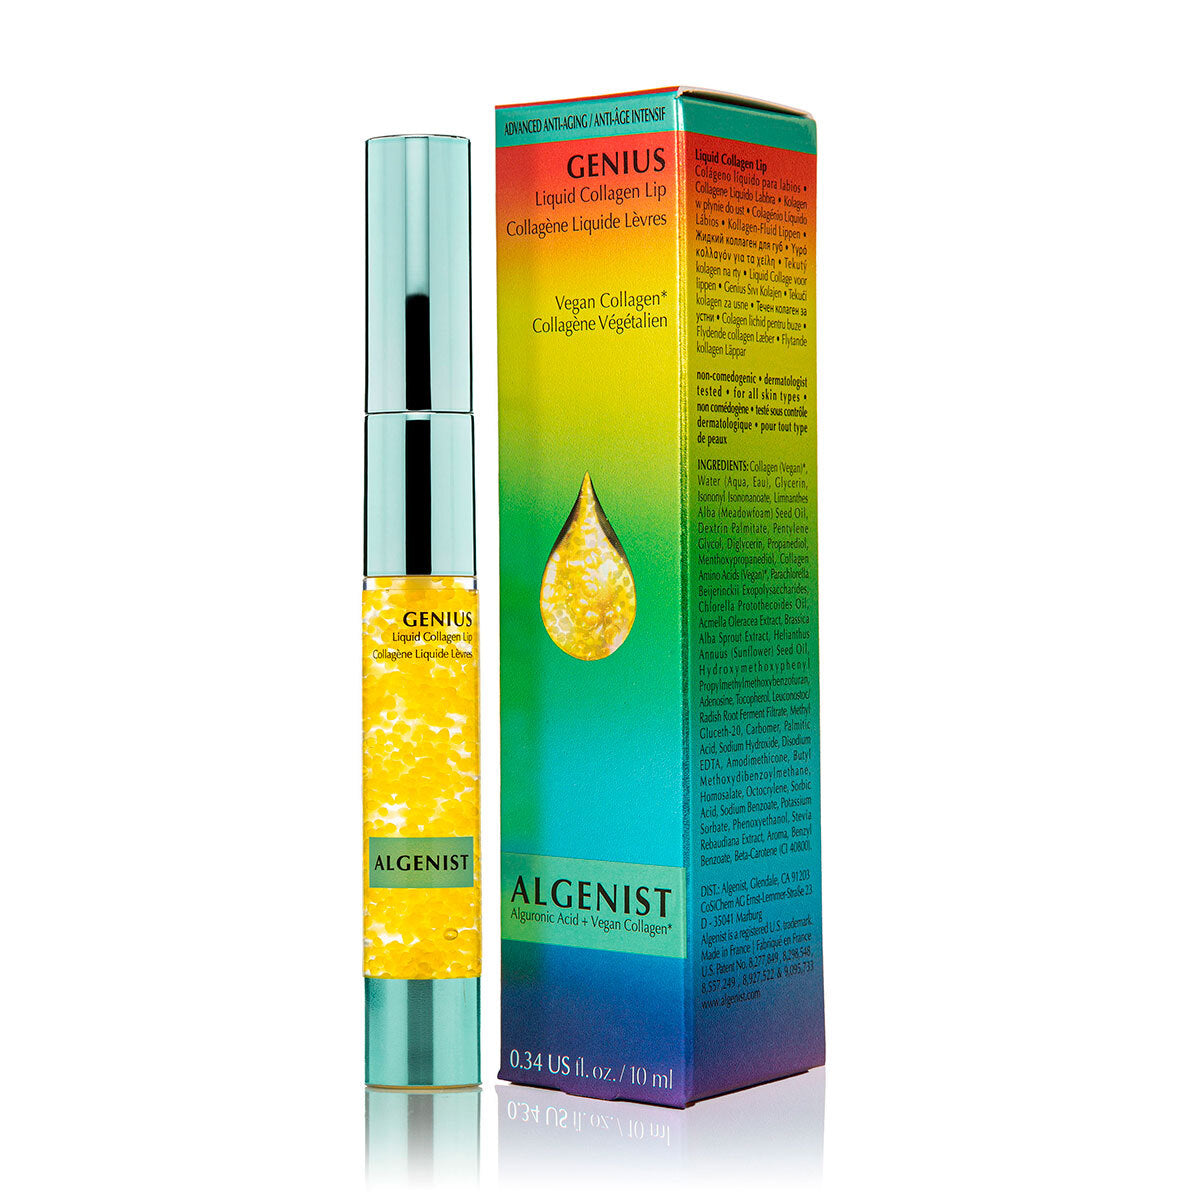 Algenist - Genius Liquid Collagen® Lip Vegan Alguronic Acid